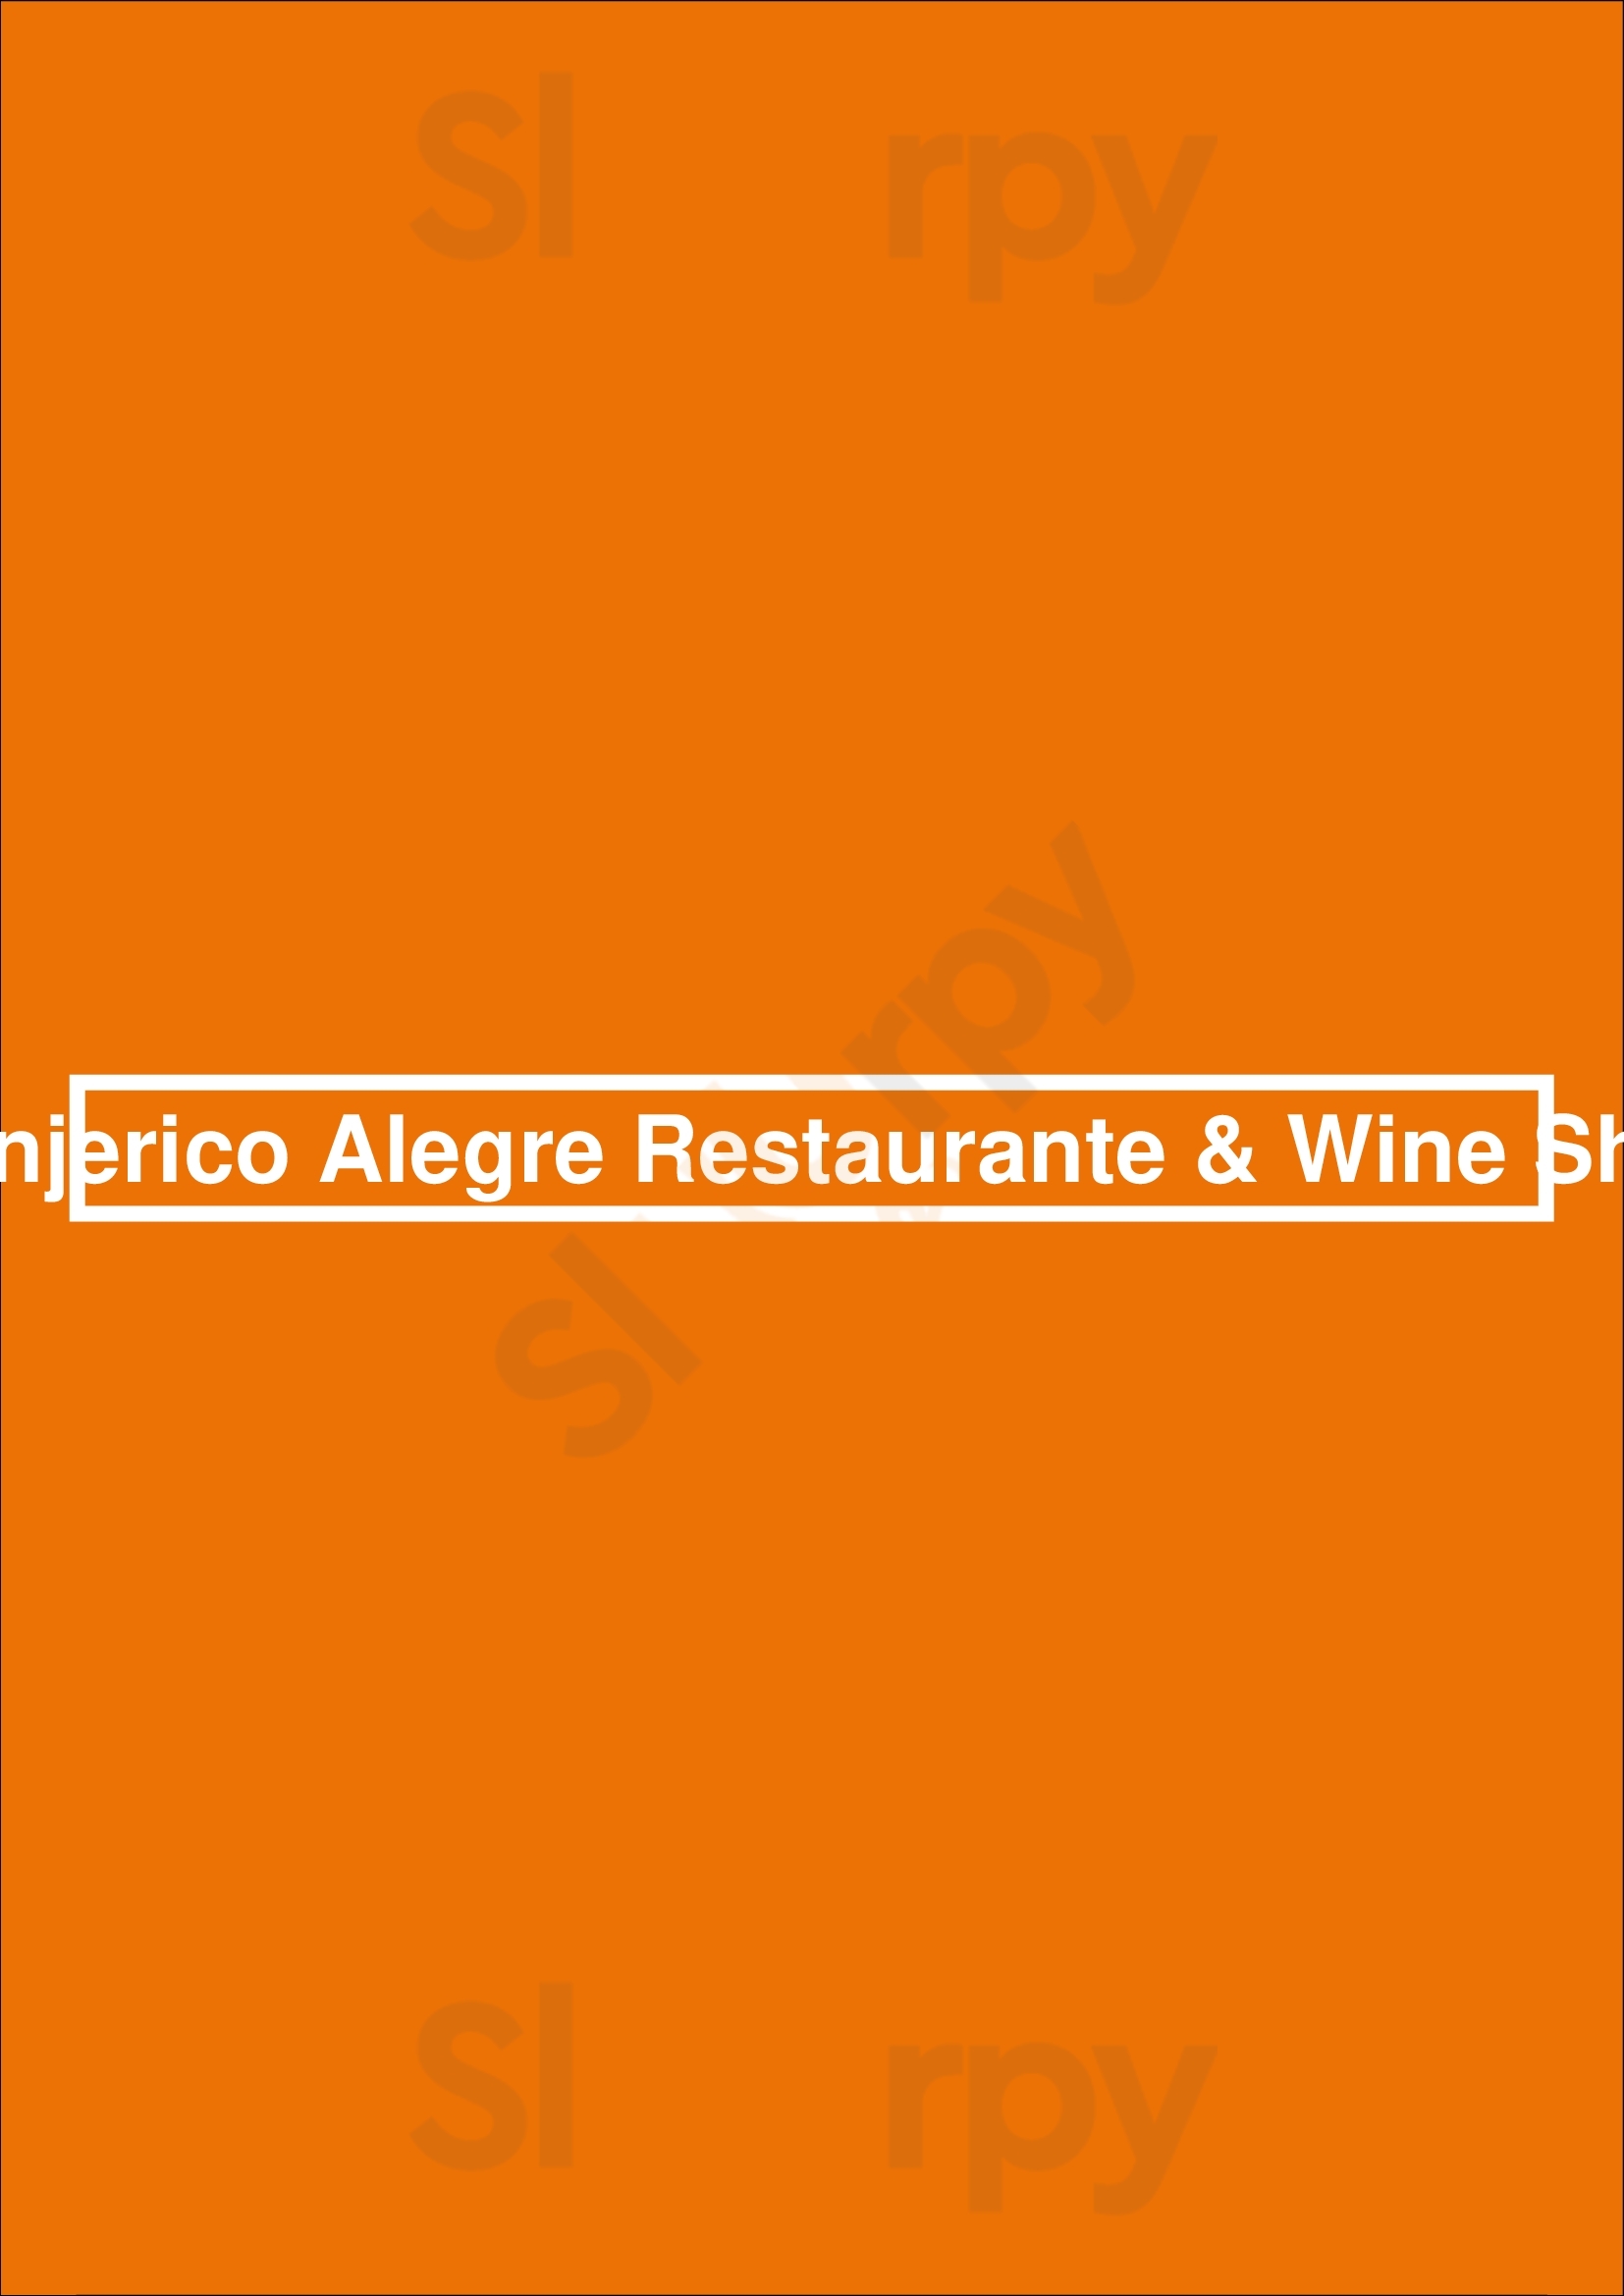 Manjerico Alegre Restaurante & Wine Shop Lisboa Menu - 1